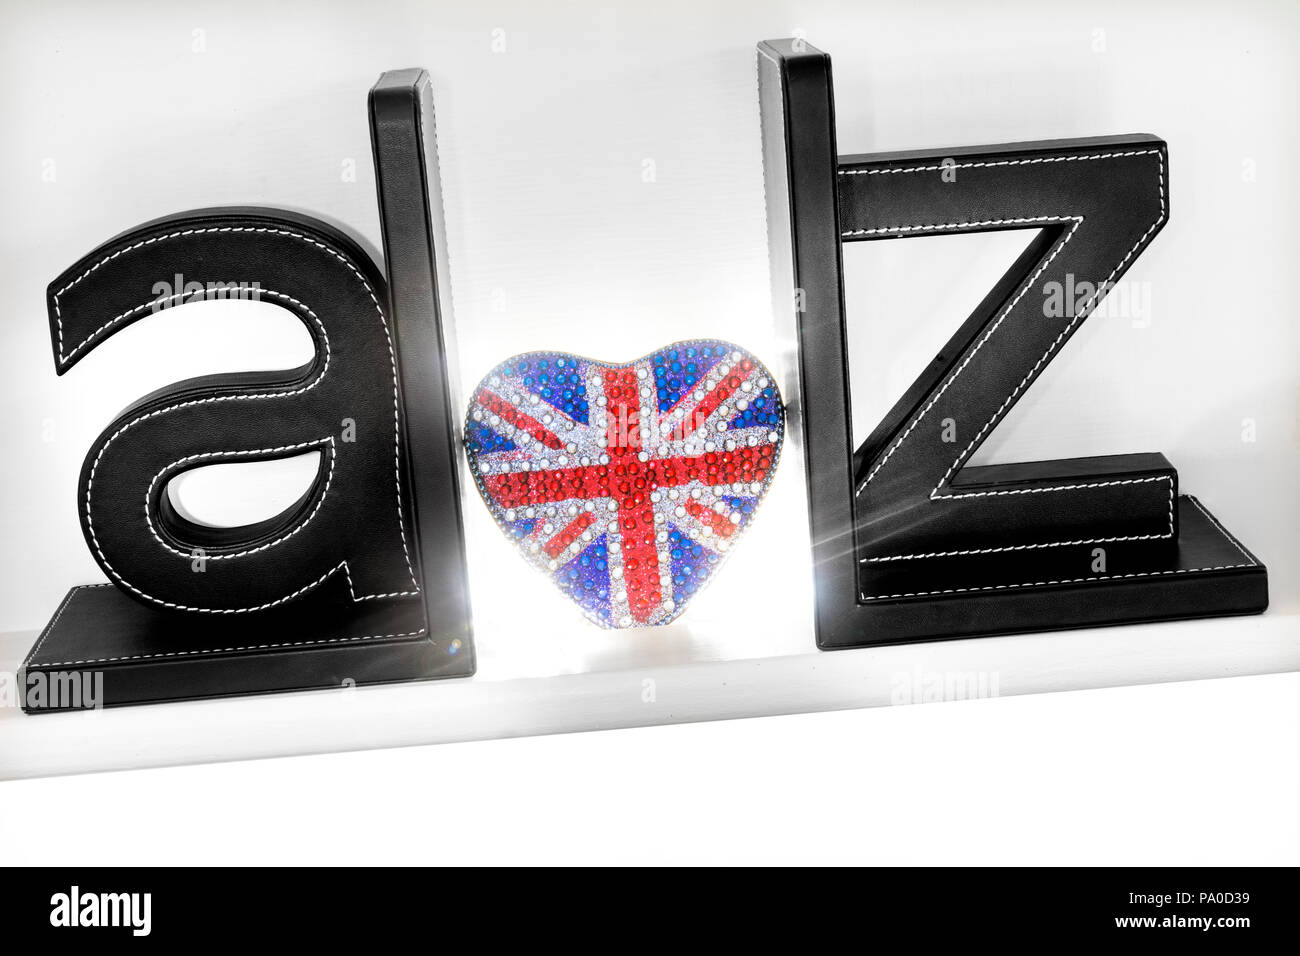 Concetto A-Z tridimensionali di lettere con cuore brillante forma Union Jack Flag motif di risplendere in amore UK Travel Brexit Guida dalla A alla Z Gran Bretagna unione Foto Stock